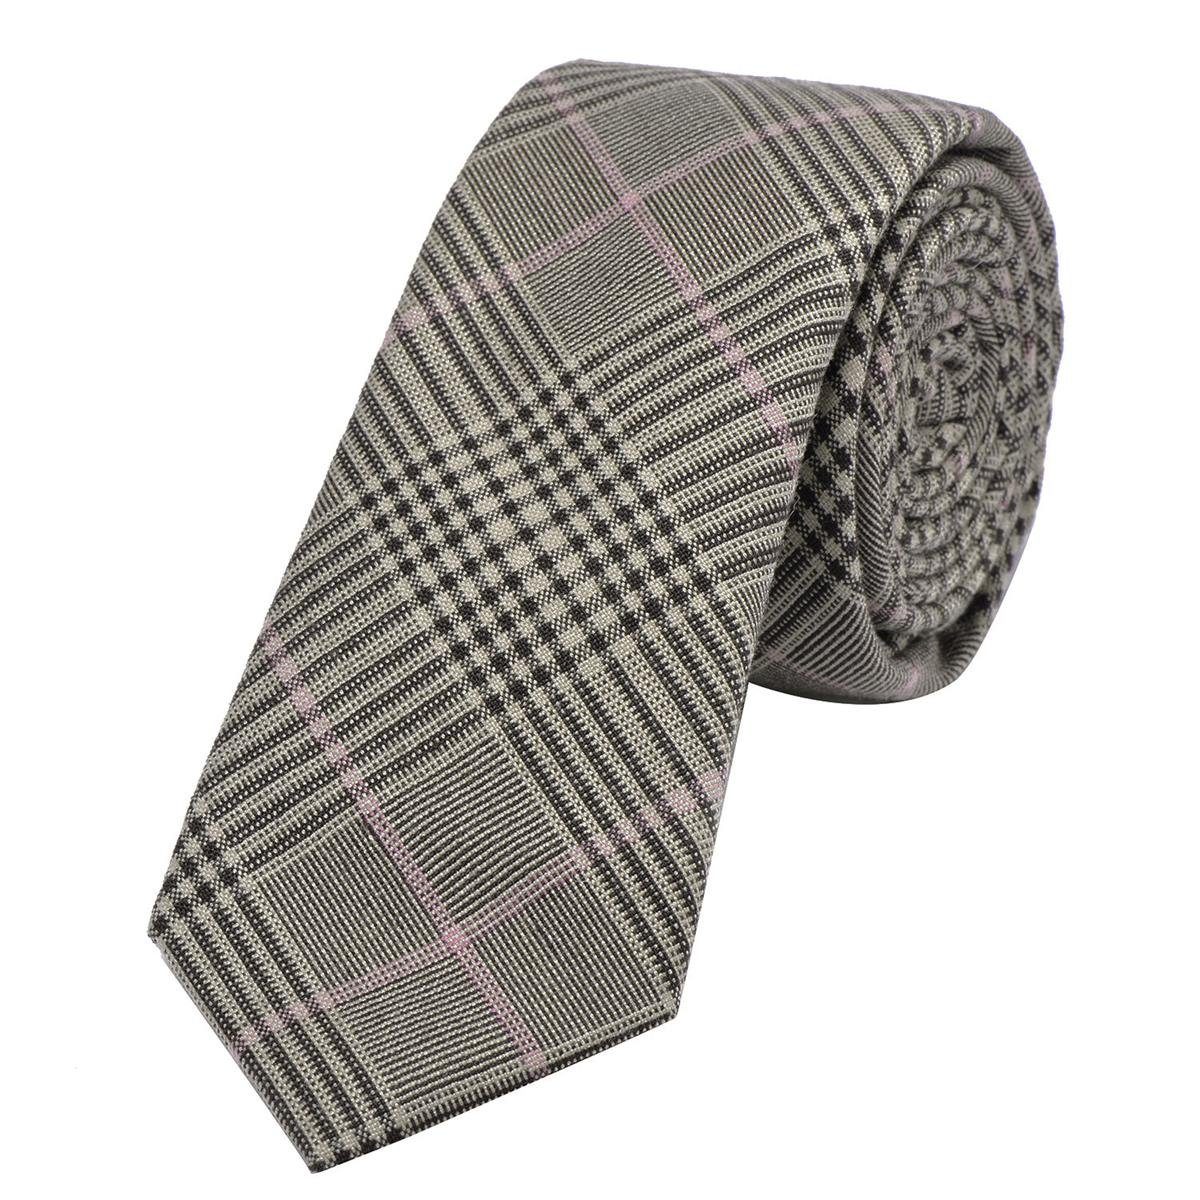 DonDon Krawatte Herren Krawatte 6 cm mit Karos oder Streifen (Packung, 1-St., 1x Krawatte) Baumwolle, kariert oder gestreift, für Büro oder festliche Veranstaltungen braun-schwarz kariert